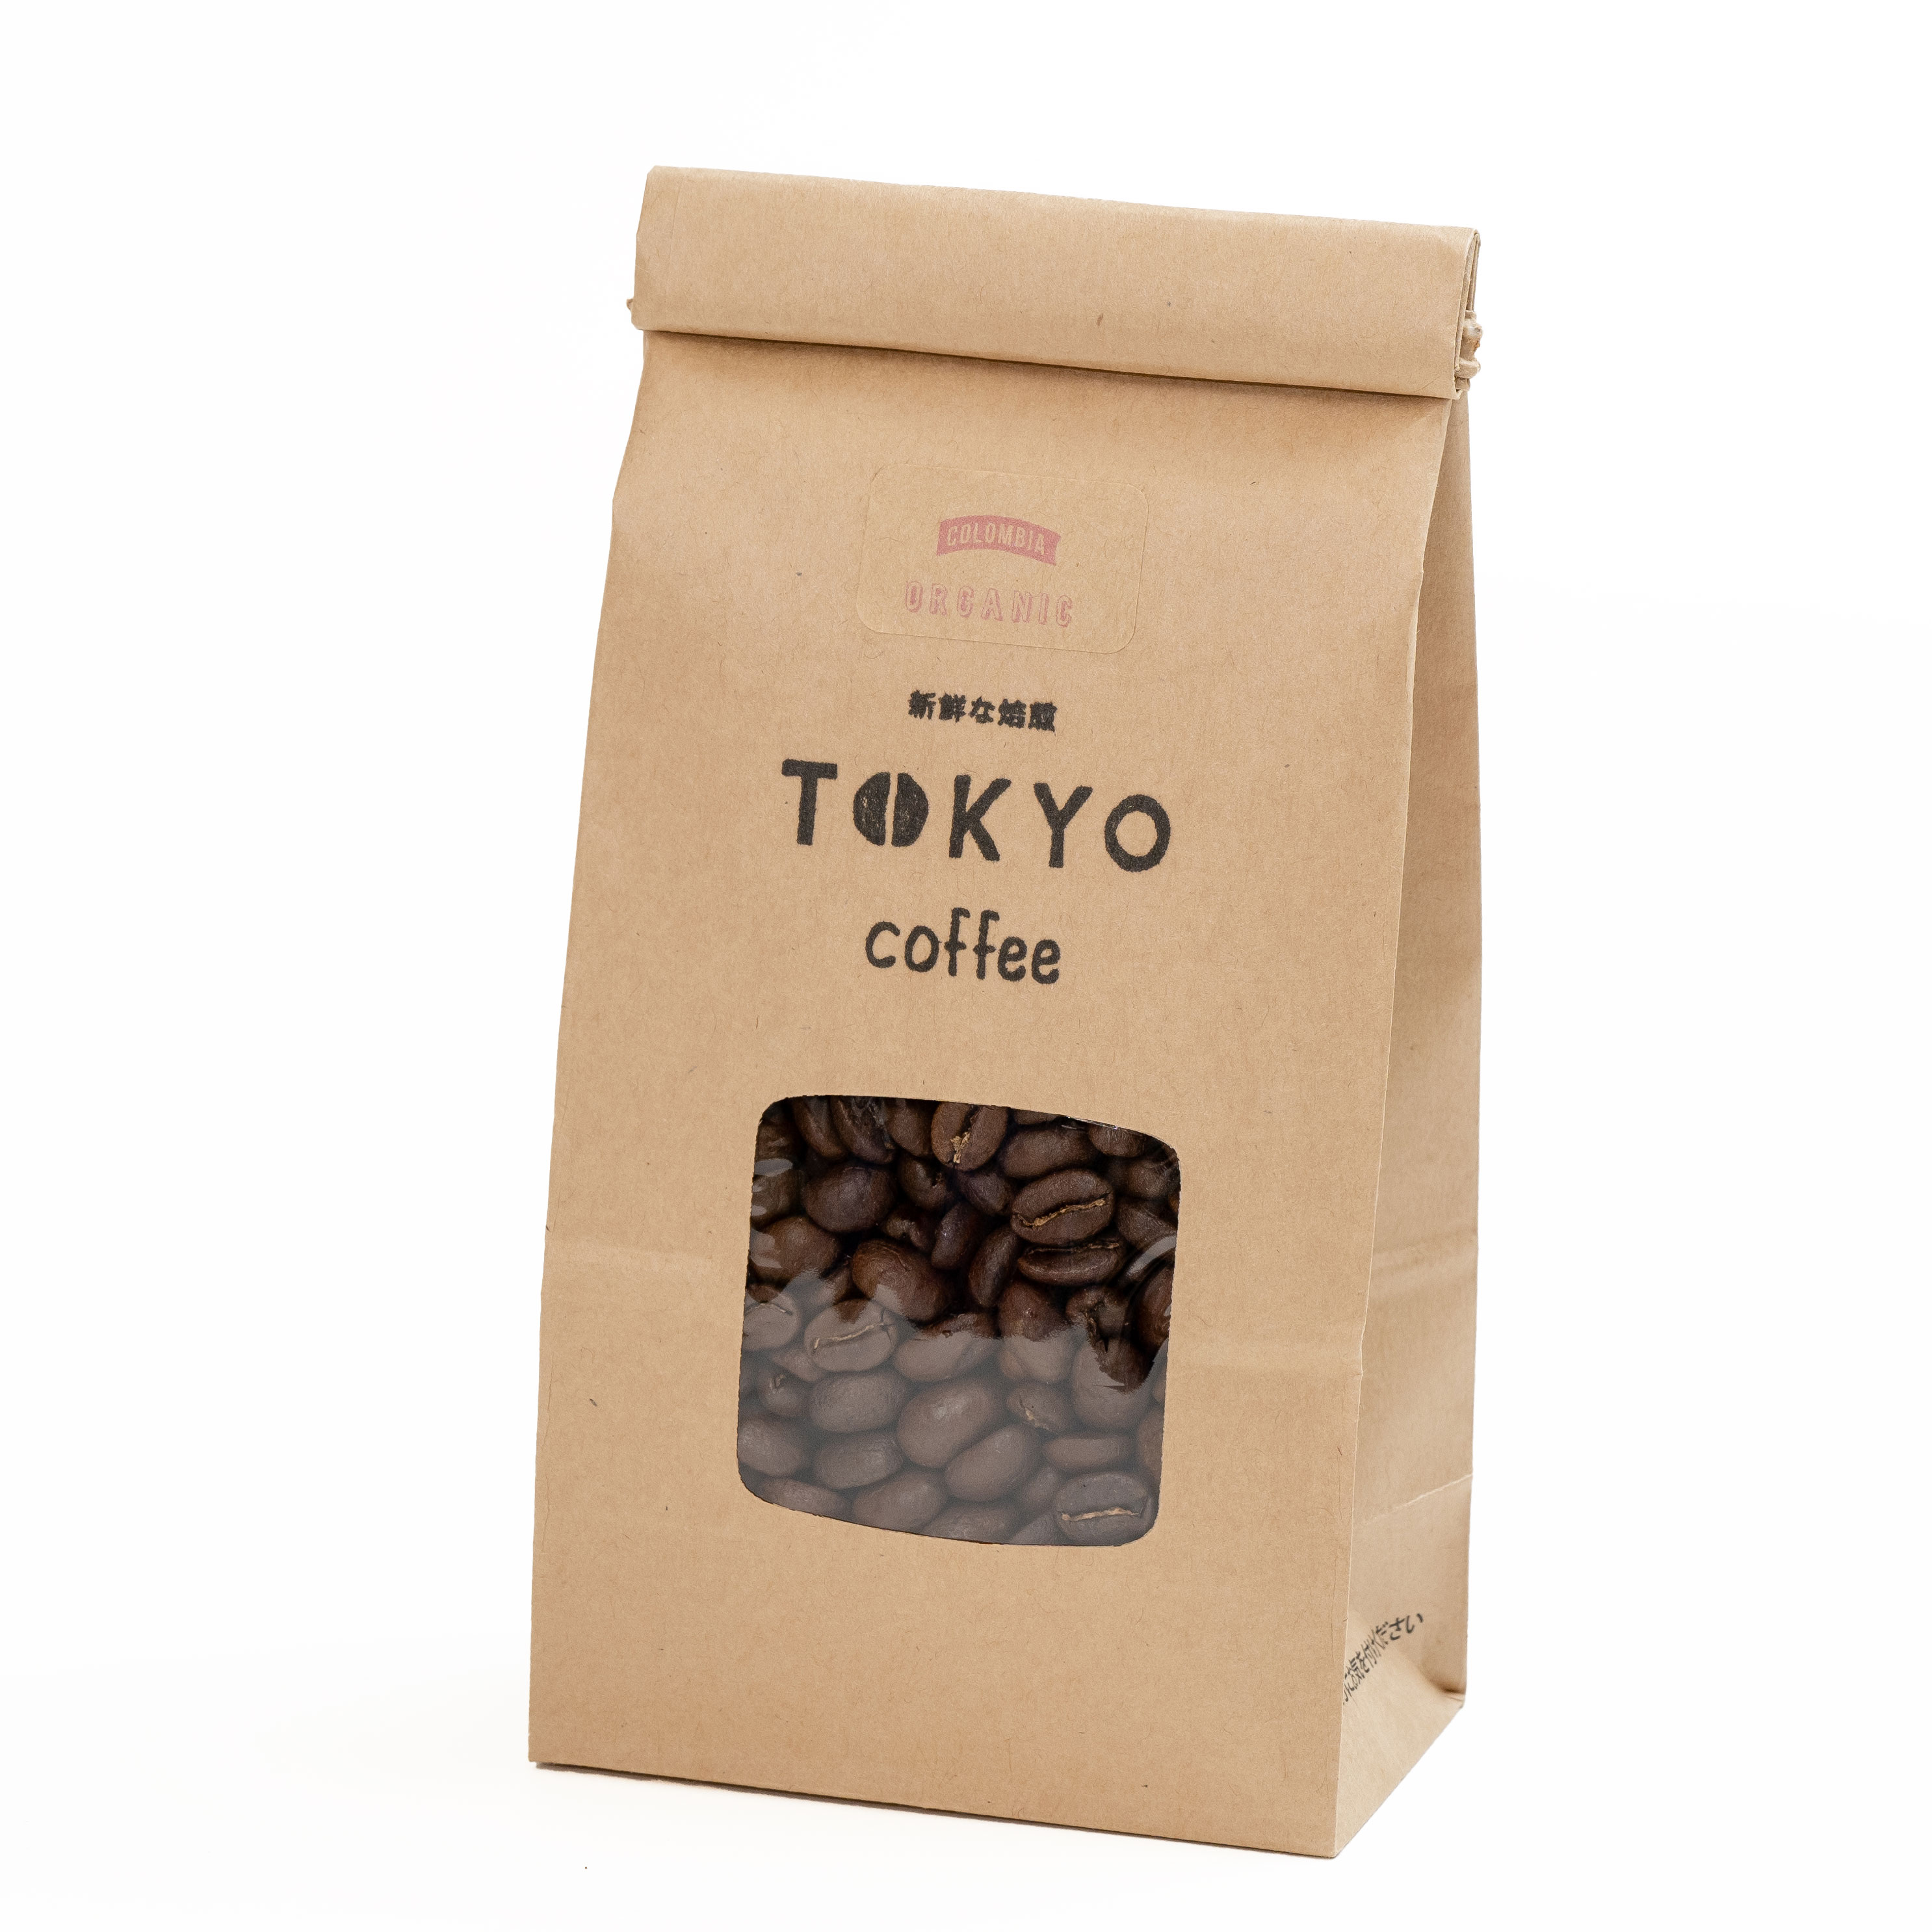 人気のシングルオリジン コロンビア のオーガニックコーヒー豆 オーガニック コロンビアコーヒー豆 TOKYO 400g Beans COFFEE 【アウトレット☆送料無料】 保証書付 Colombia Organic Coffee